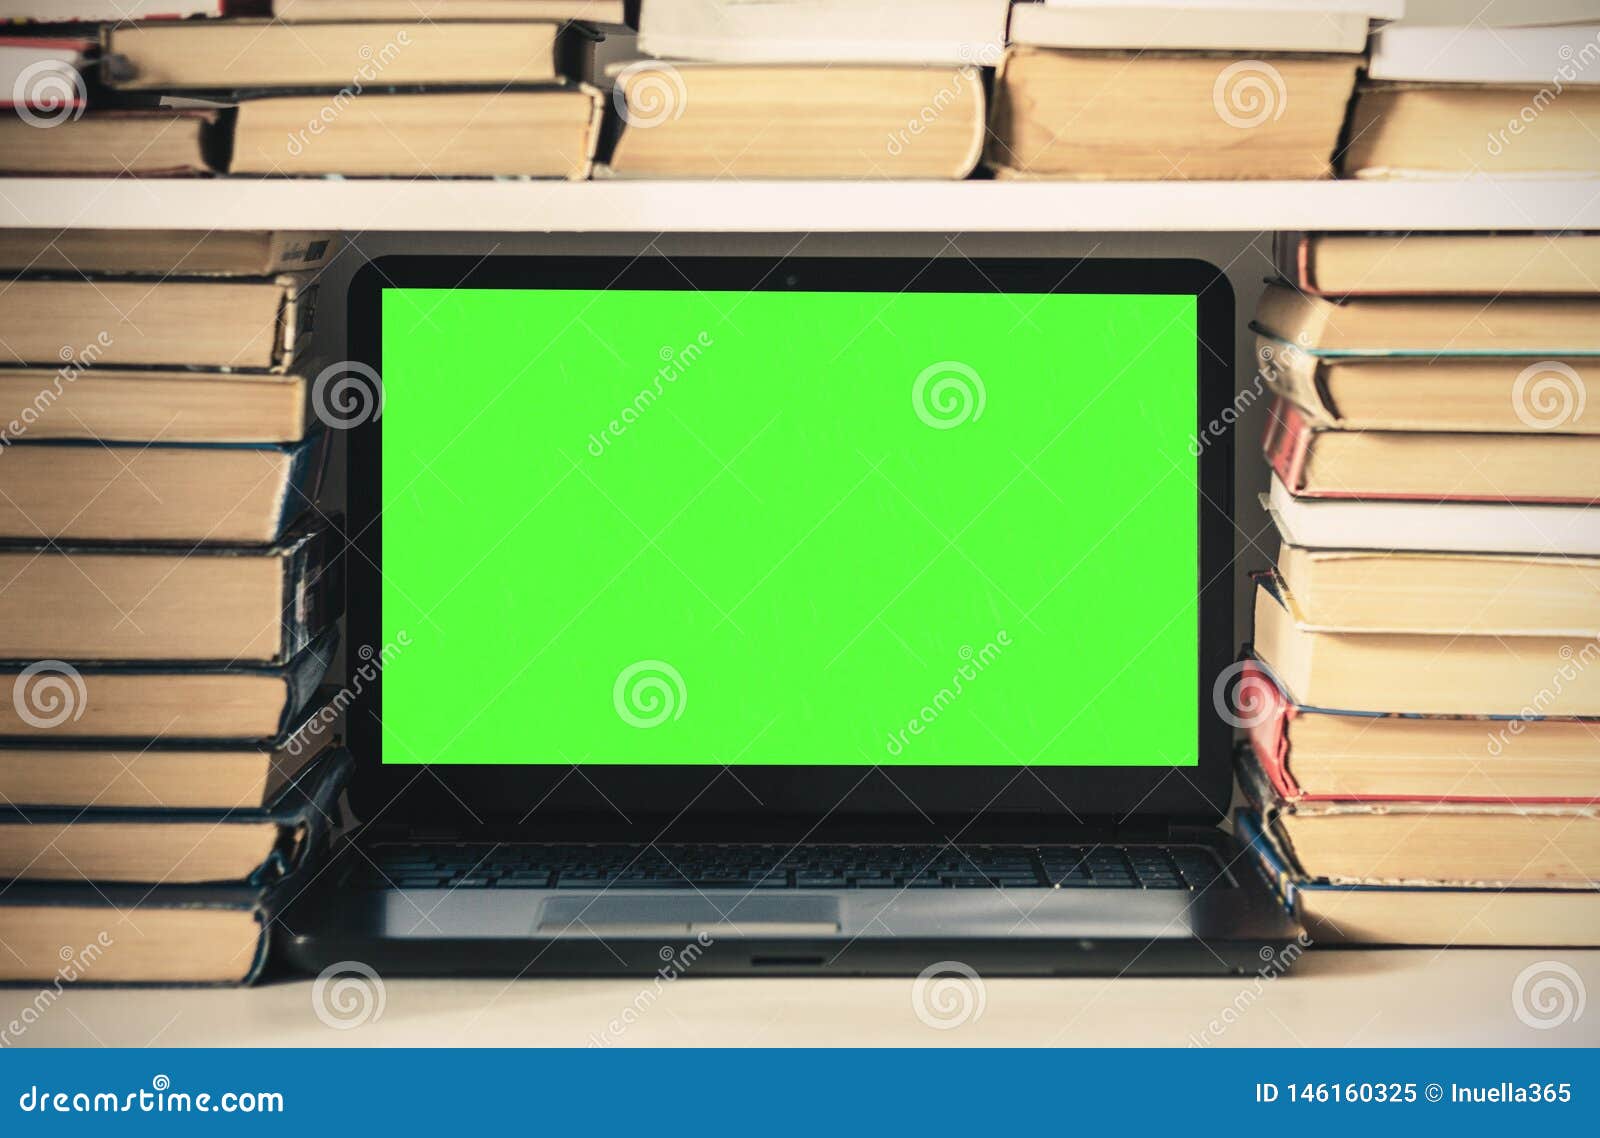 Màn hình xanh laptop, đống sách, sổ tay và bút chì trên nền trắng: Với màn hình xanh laptop, đống sách, sổ tay và bút chì trên nền trắng, bạn sẽ được trải nghiệm một không gian học tập hiện đại và tiện lợi. Hãy tham gia các khóa học của chúng tôi để được học hỏi cách sử dụng các công cụ thông minh này và trở thành những người thành công trong tương lai.